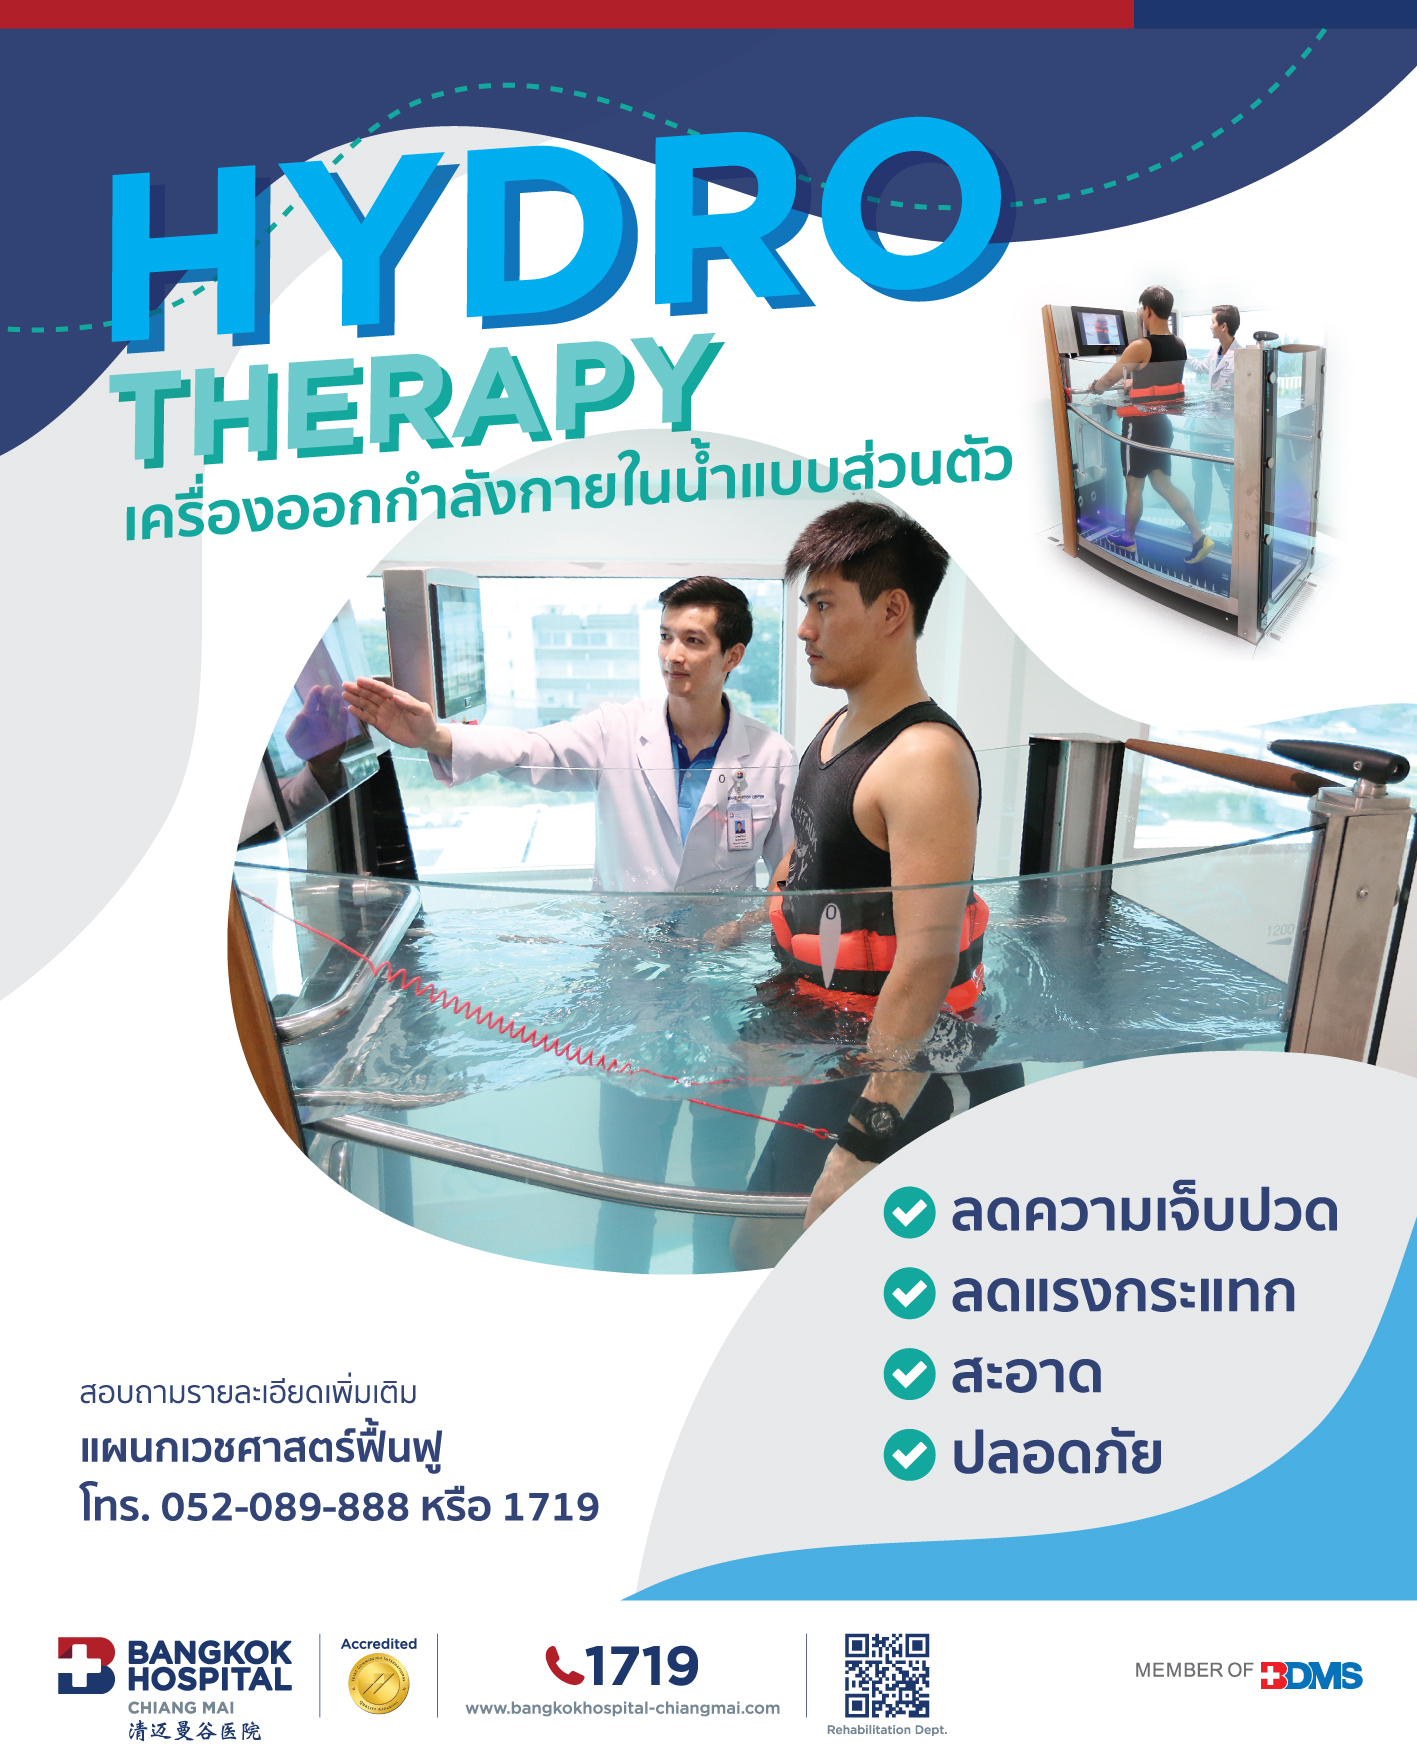 ออกกำลังกายในน้ำด้วยเครื่อง Hydro Therapy ลดความเจ็บปวดและแรงกระแทก - fโรงพยาบาลกรุงเทพเชียงใหม่